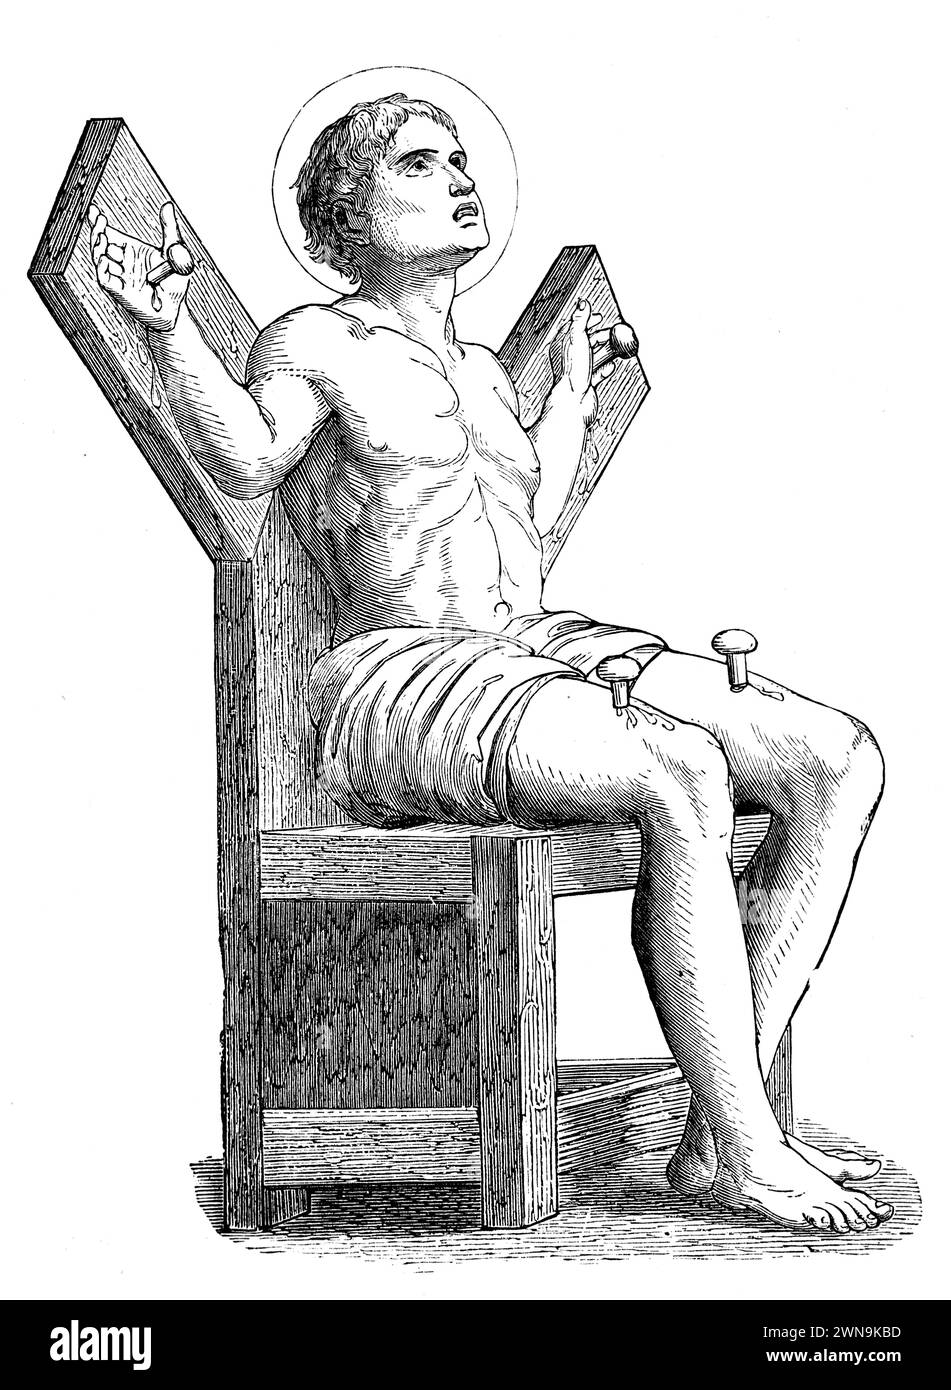 San Quintino inchiodato ad una croce su una sedia: Quentin di Amiens era un santo cristiano del III secolo martirizzato a Beauvais. Incisione da vite dei Santi del reverendo Sabin Baring-Gould, pubblicata nel 1898 Foto Stock